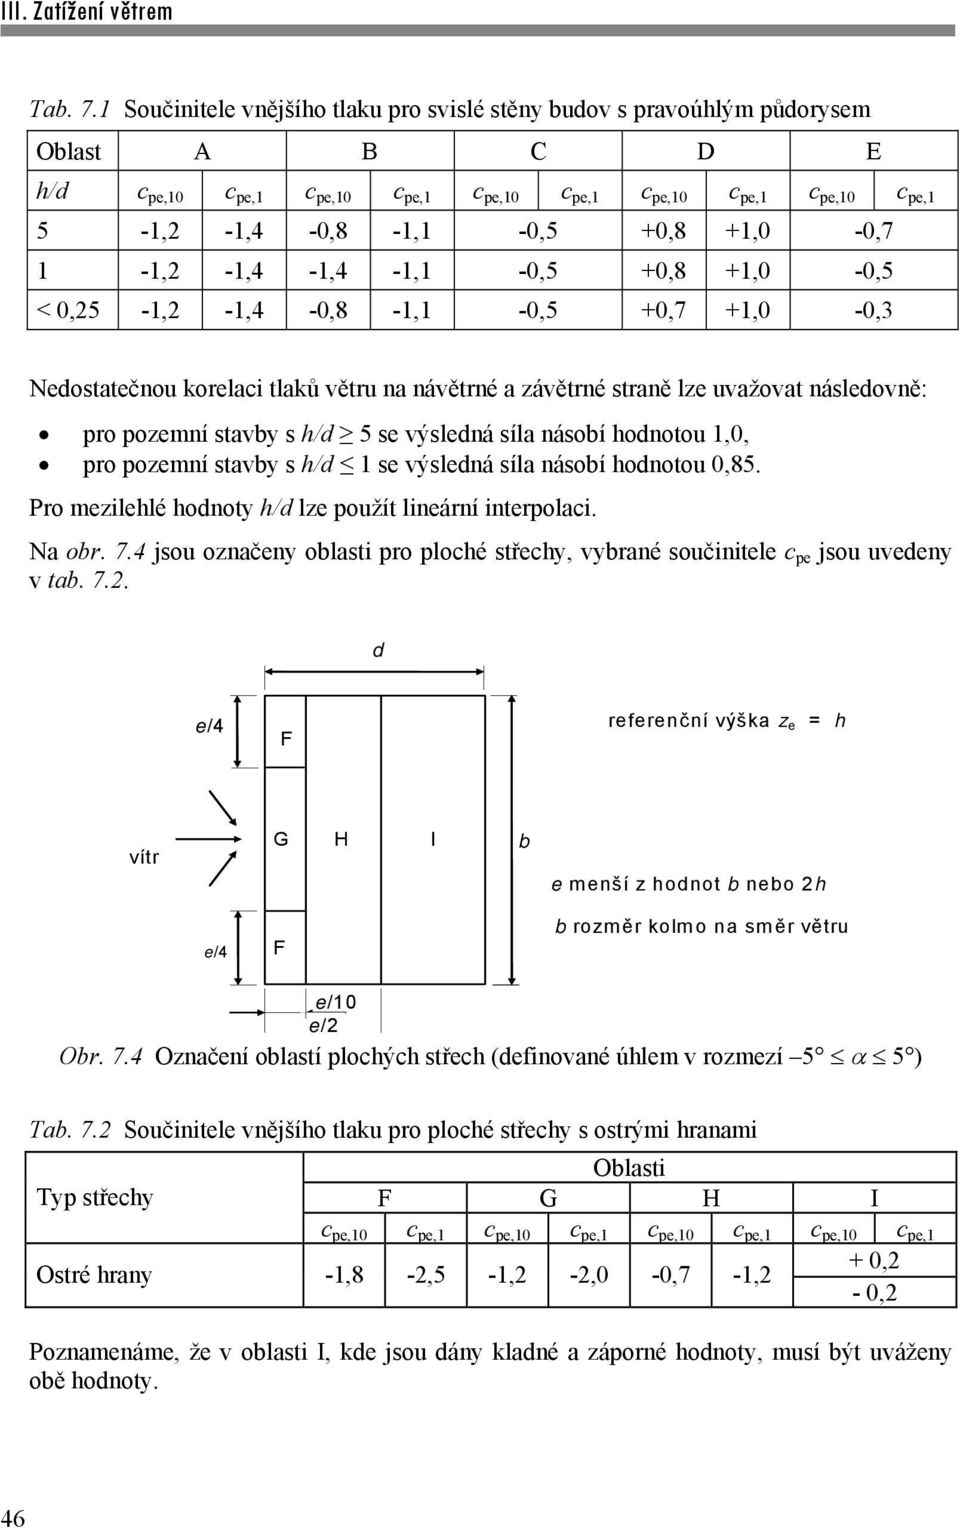 +1,0-0,7 1-1,2-1,4-1,4-1,1-0,5 +0,8 +1,0-0,5 < 0,25-1,2-1,4-0,8-1,1-0,5 +0,7 +1,0-0,3 Nedostatečnou korelaci tlaků větru na návětrné a závětrné straně lze uvažovat následovně: pro pozemní stavby s